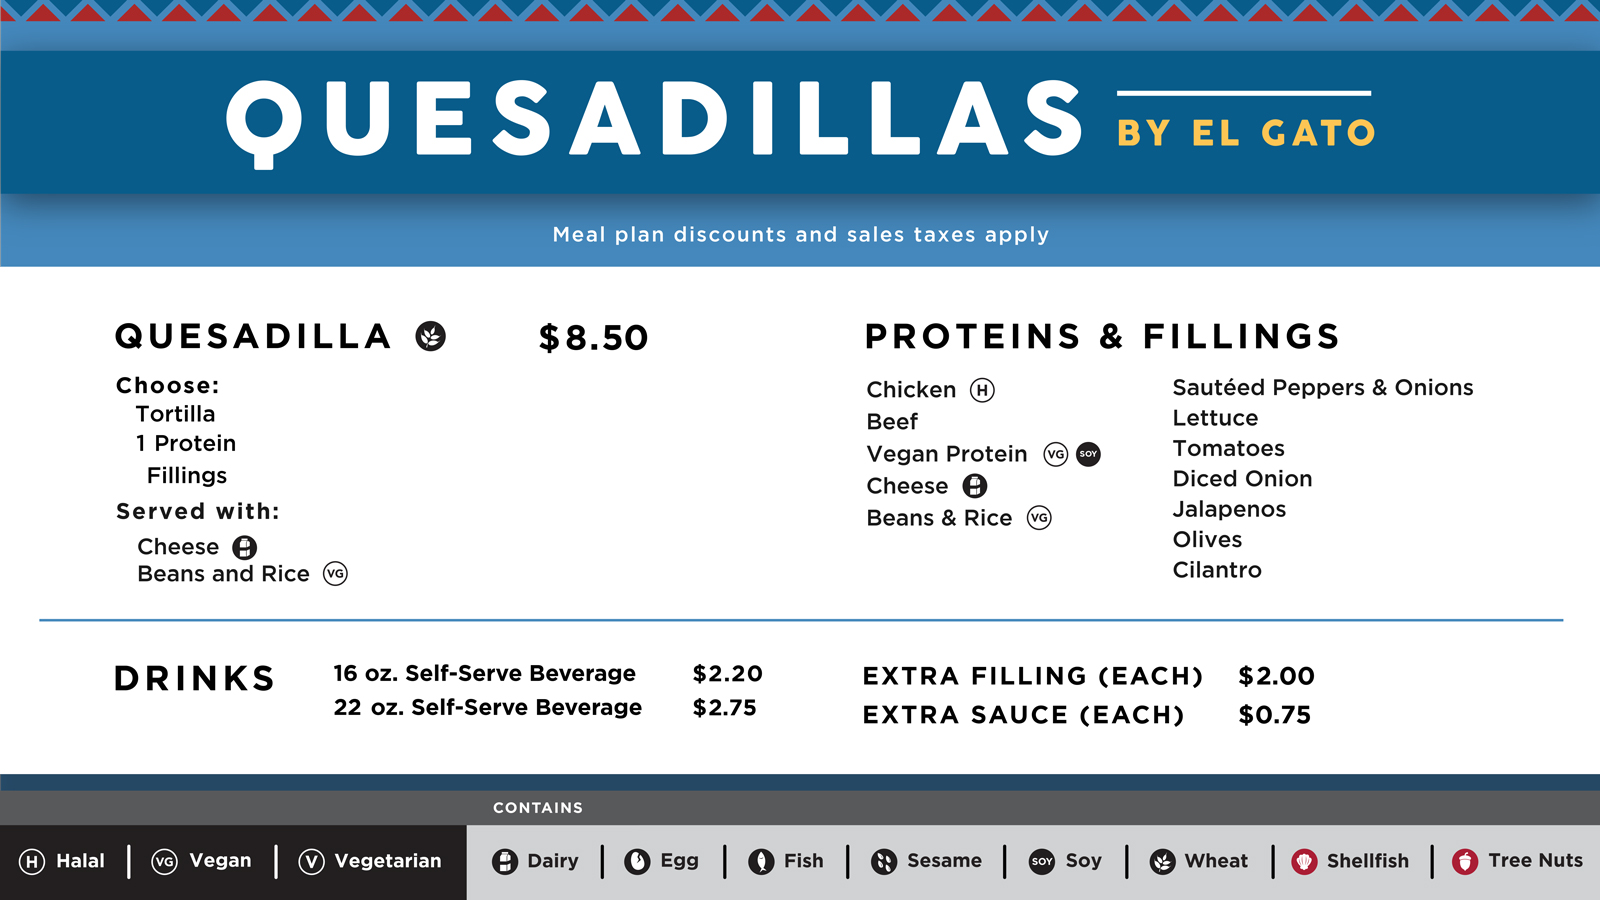 The menu board for Quesadillas by El Gato